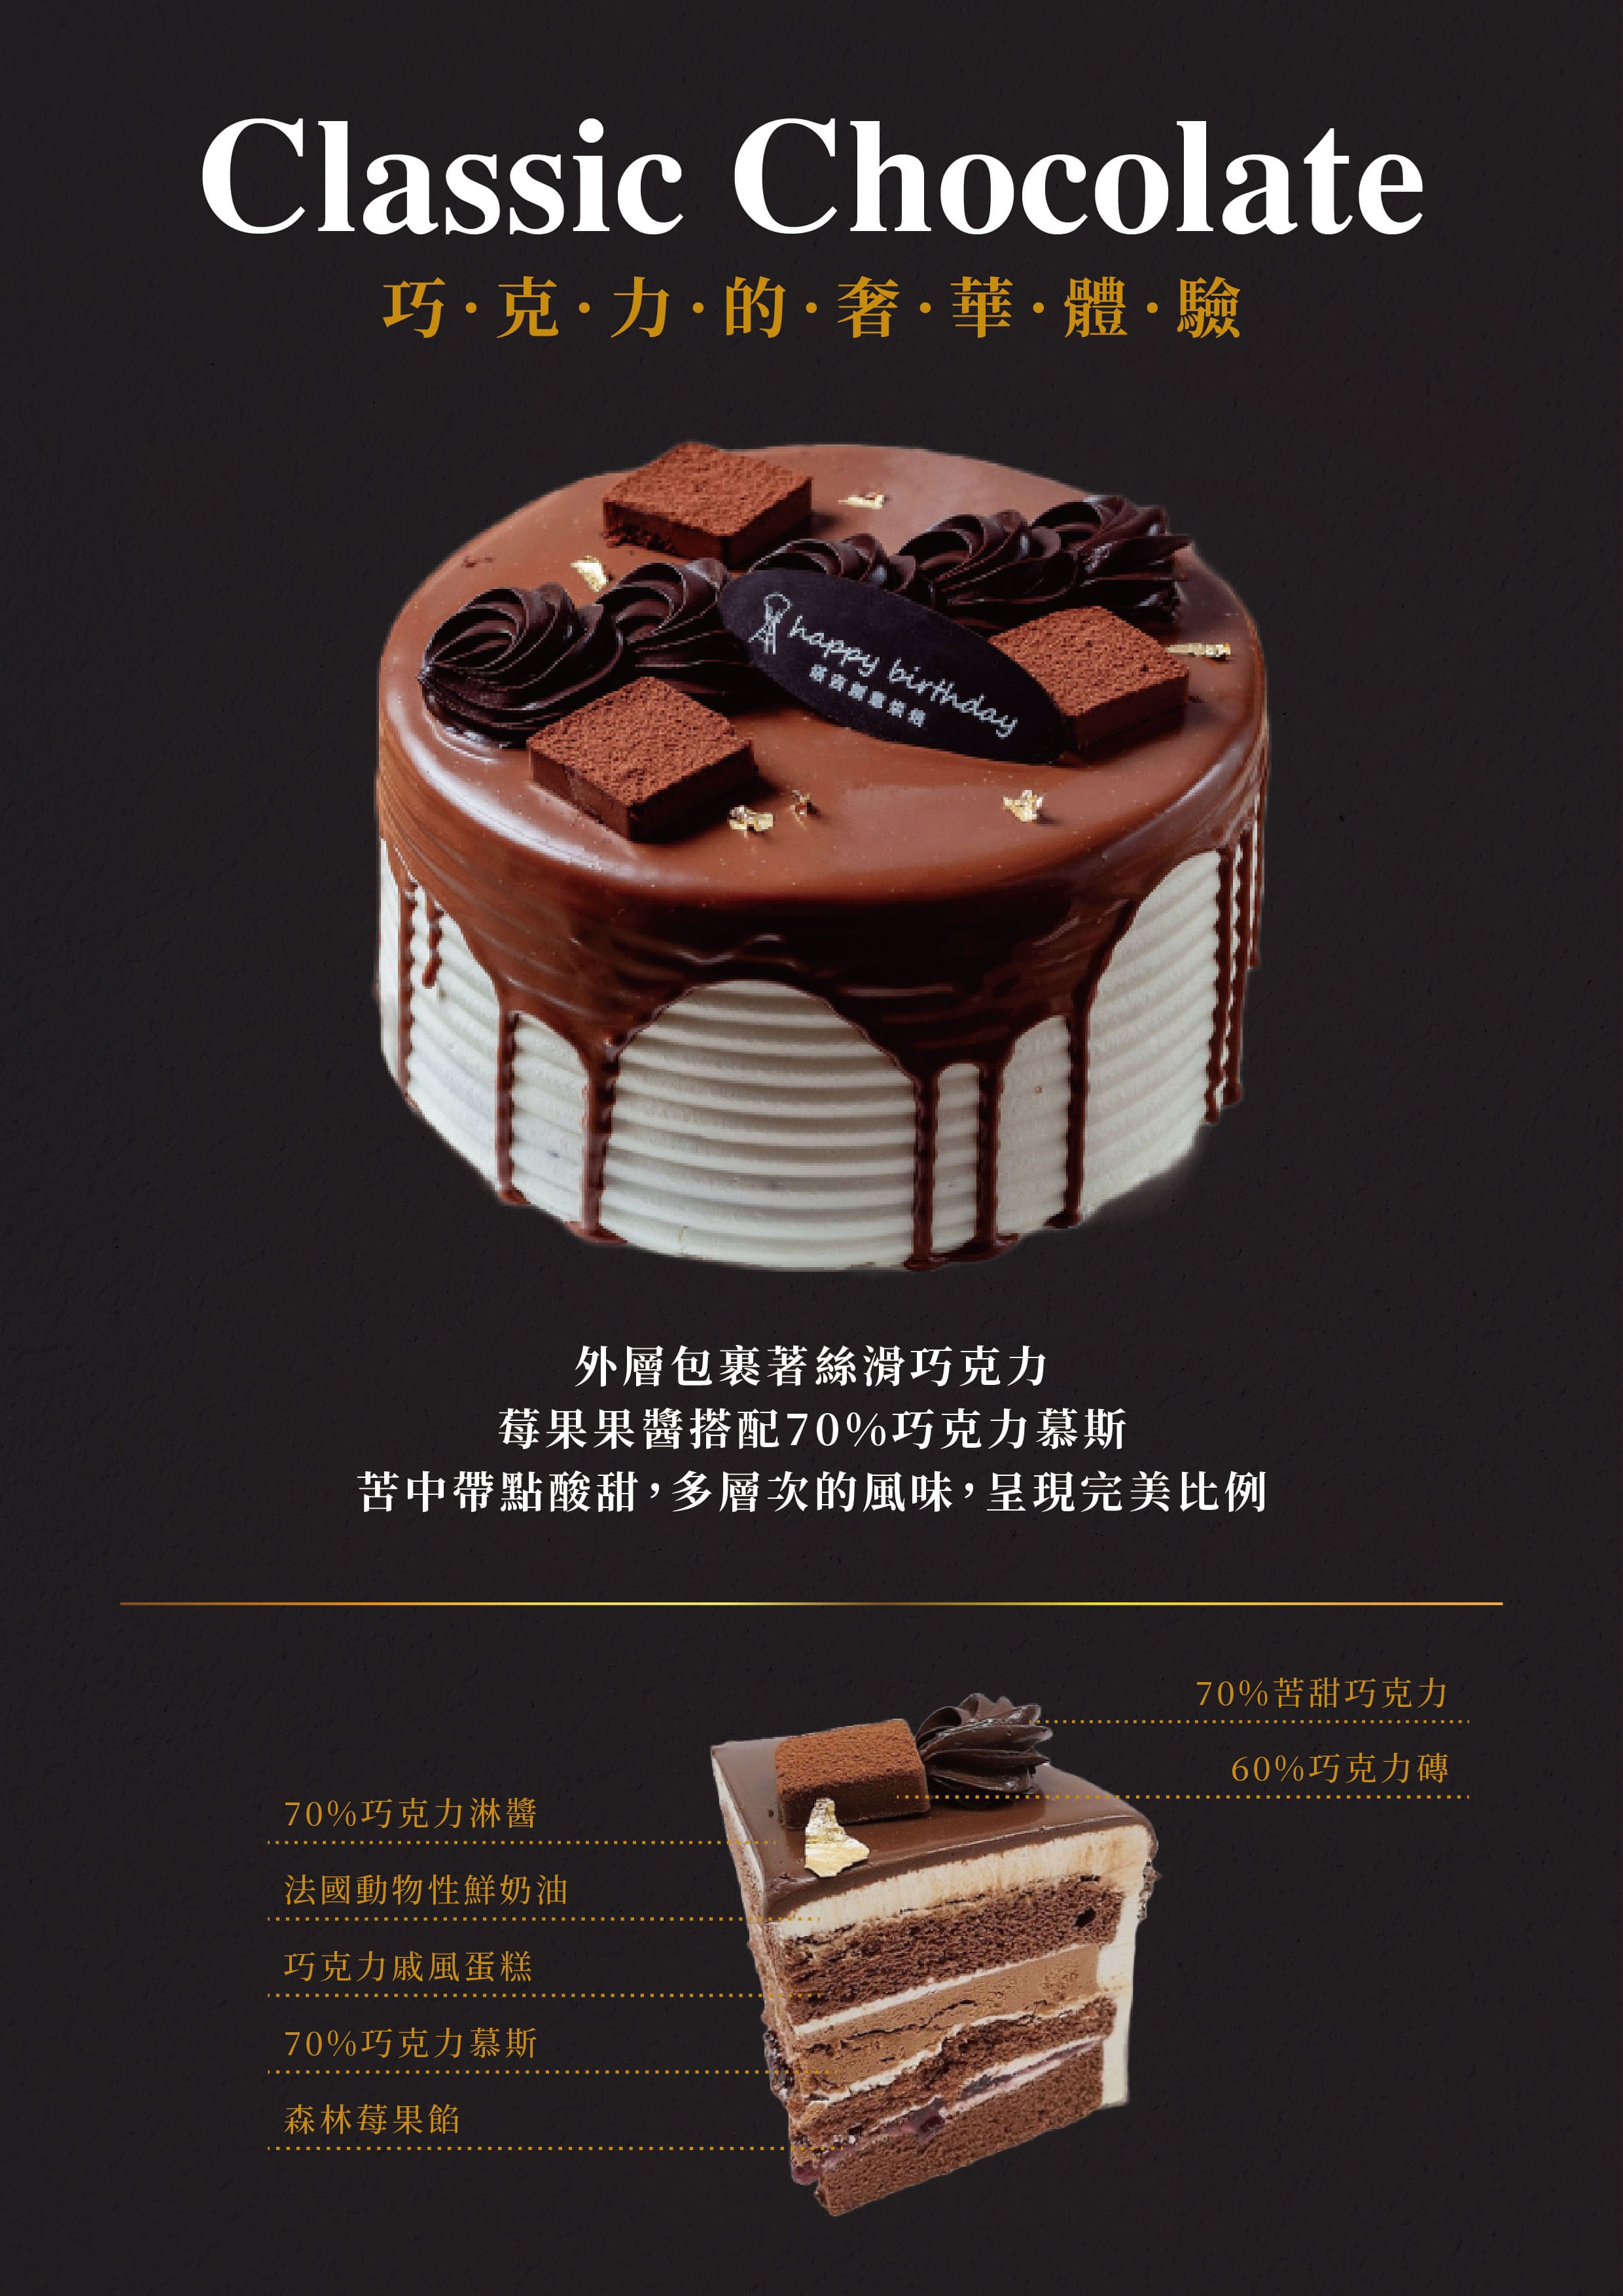 黑森林巧克力蛋糕-巧克力生日蛋糕-永和蛋糕推薦-中和蛋糕推薦